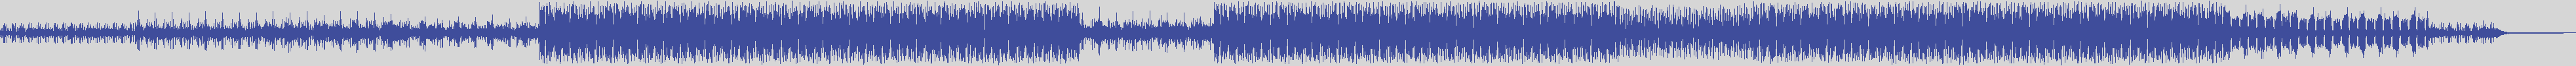 noclouds_chillout [NOC011] Ams - Mo [Original Mix] audio wave form